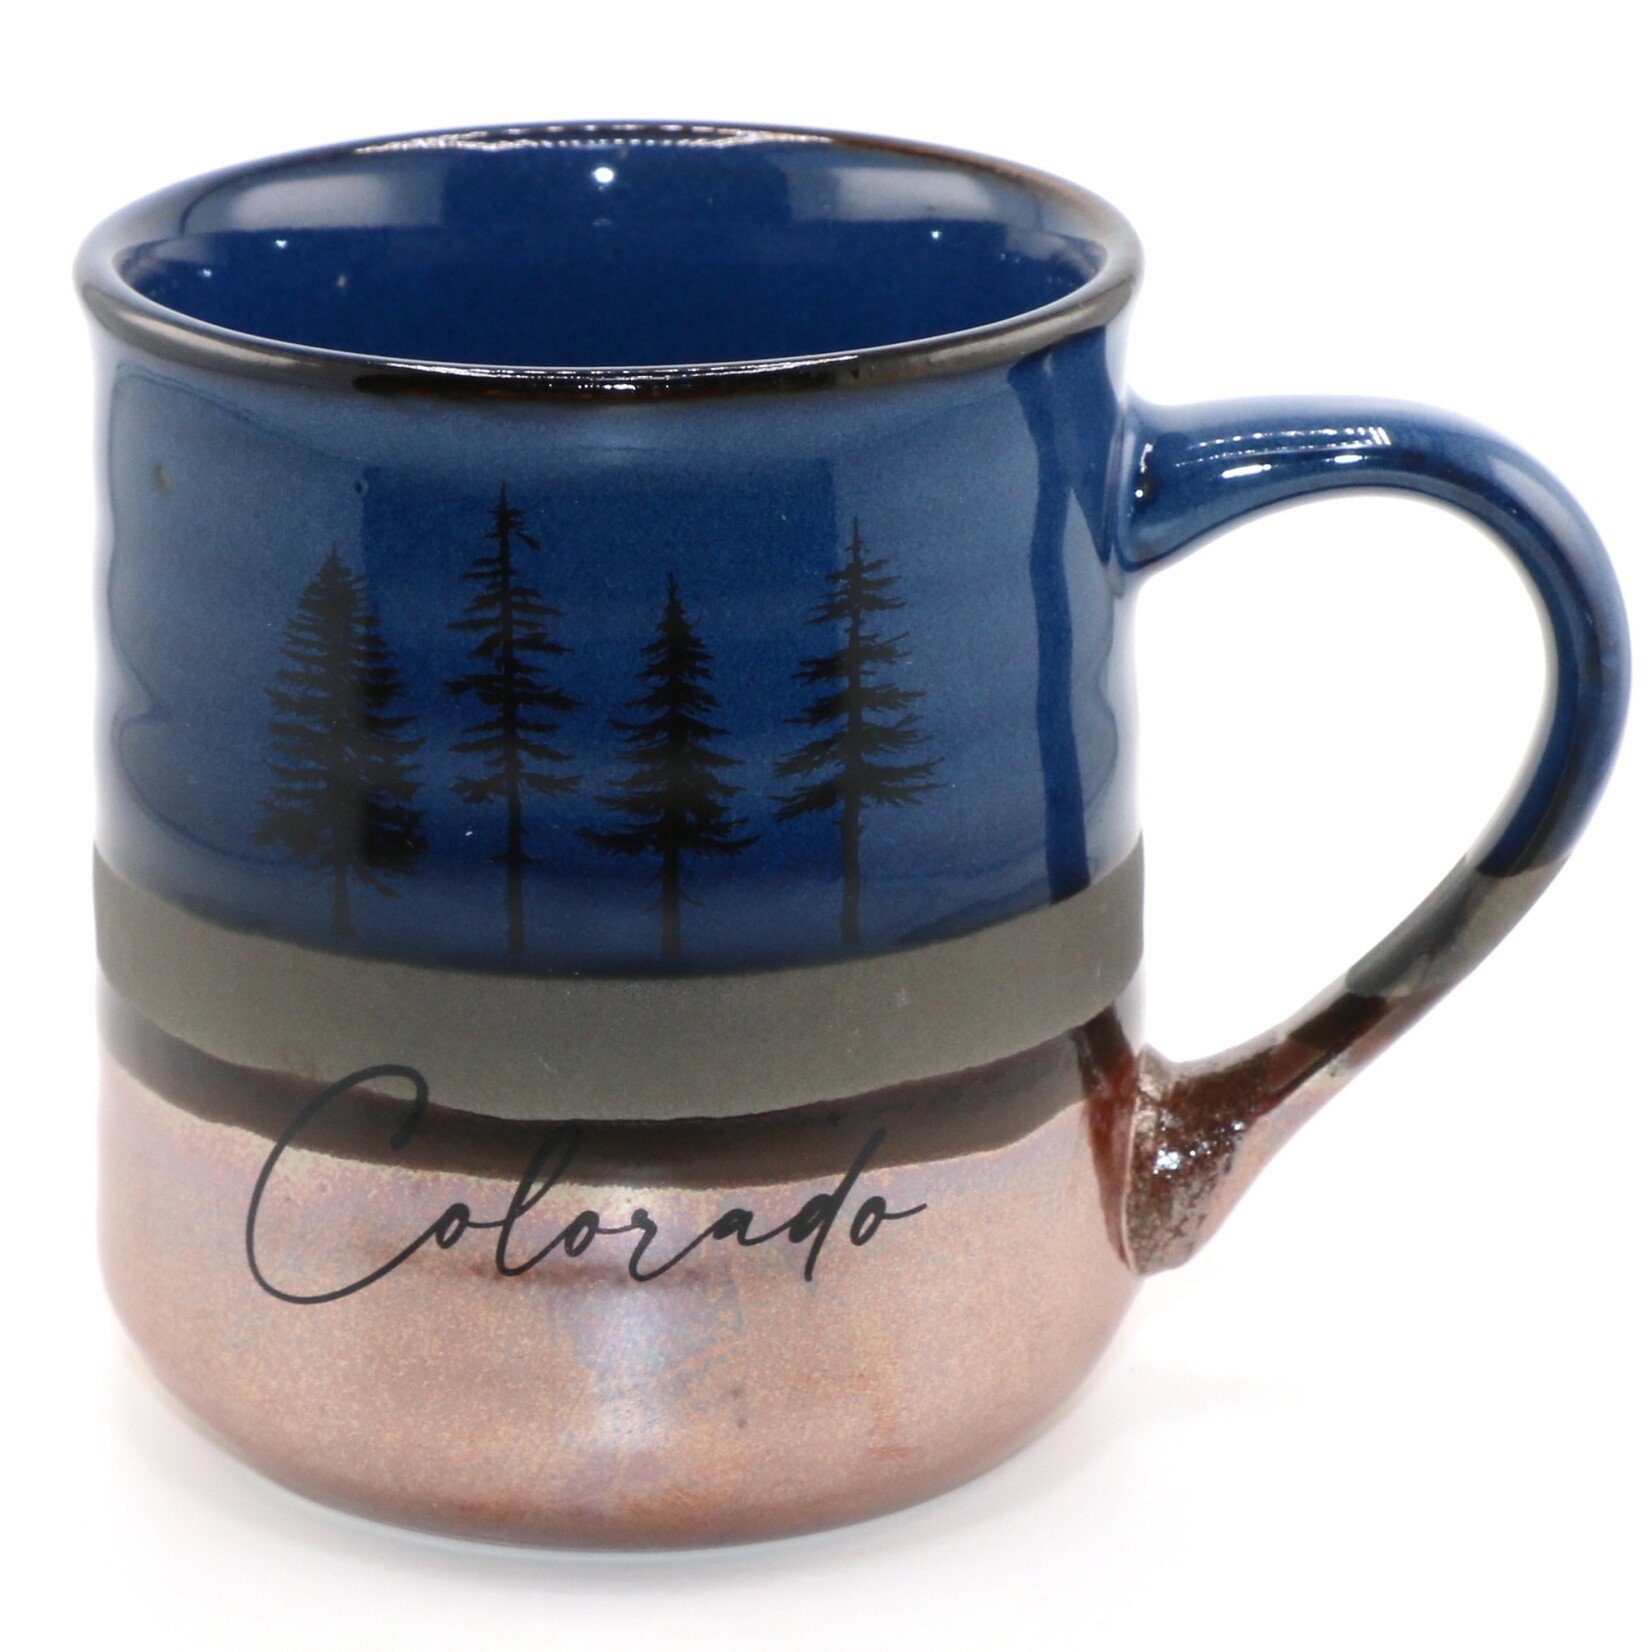 A&f Souvenir Copper Bottom Stoneware Mug - Navy